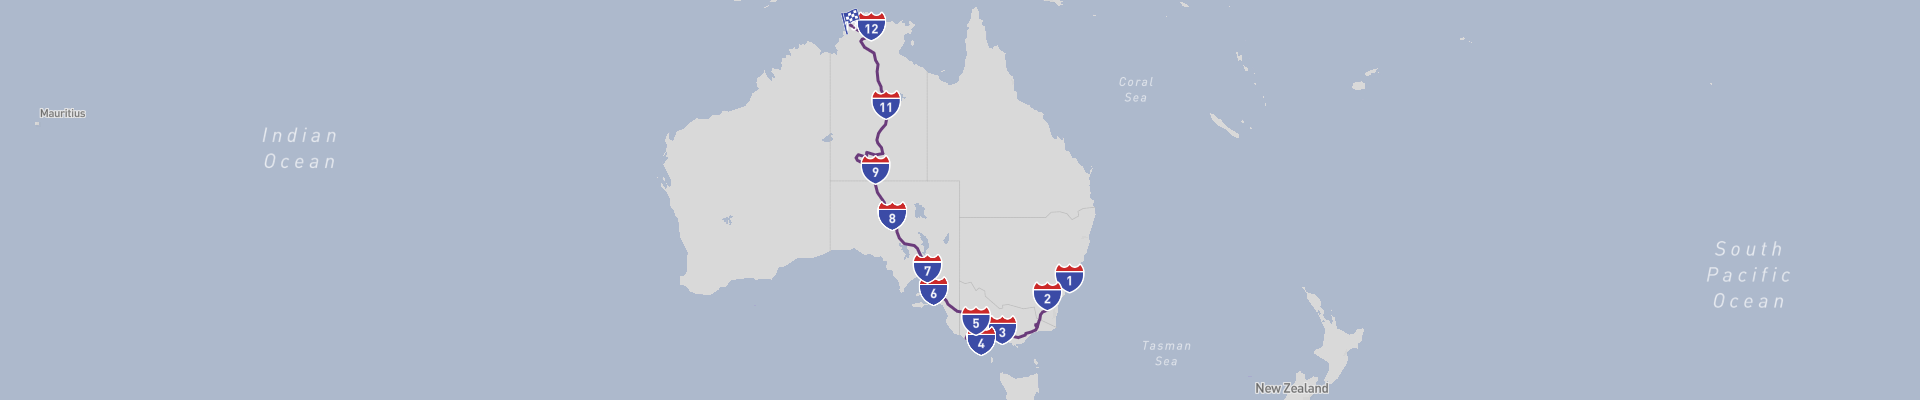 Sydney to Darwin Road Trip